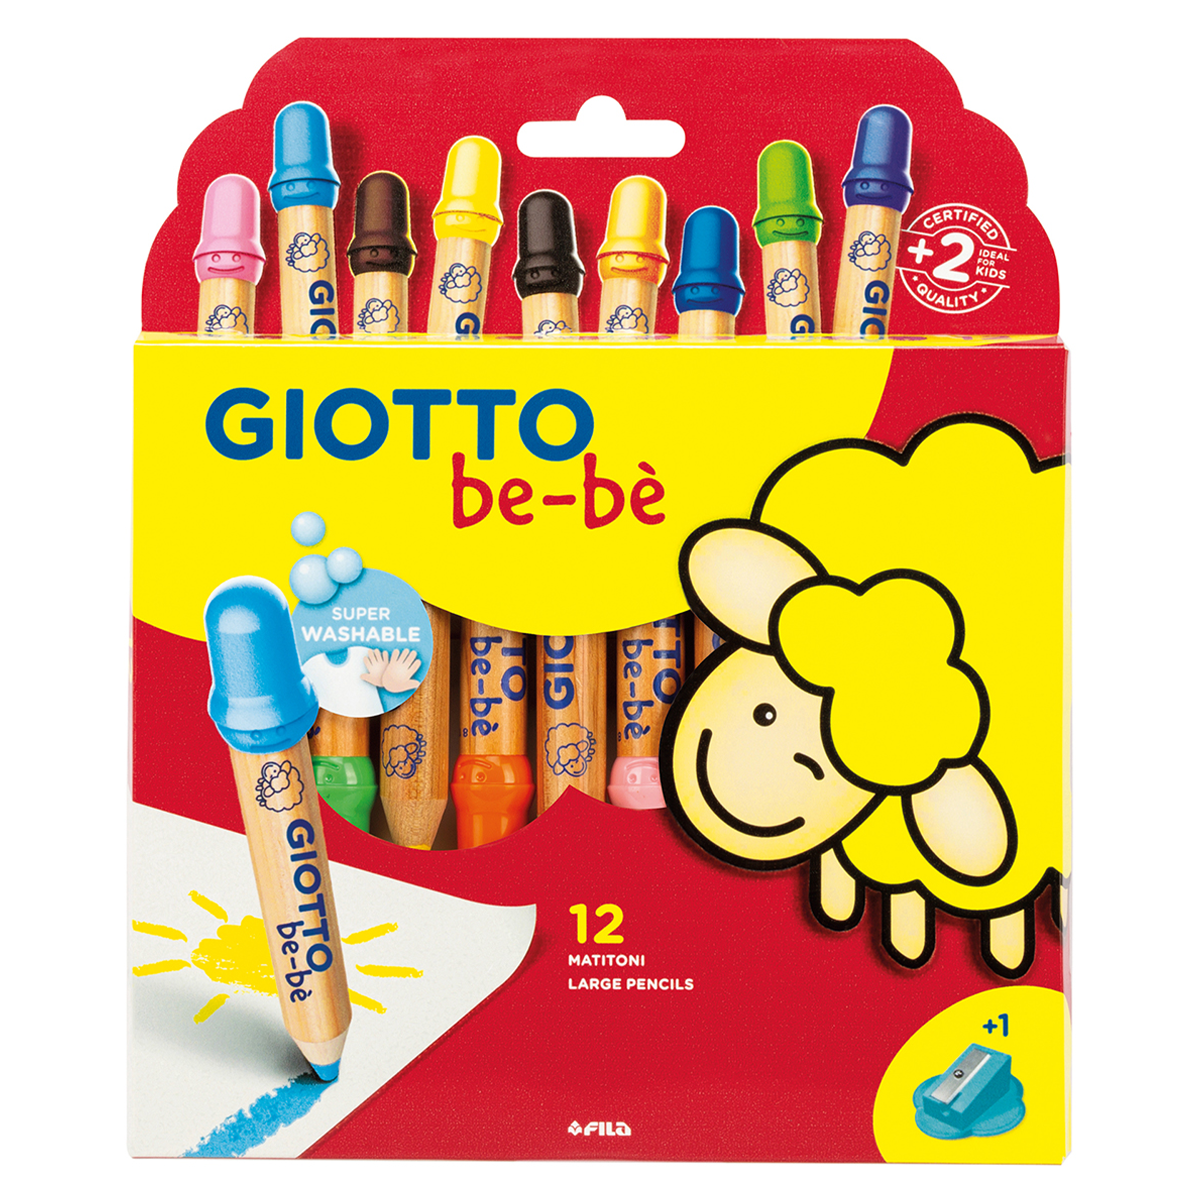 Super crayons de couleur GIOTTO : Comparateur, Avis, Prix